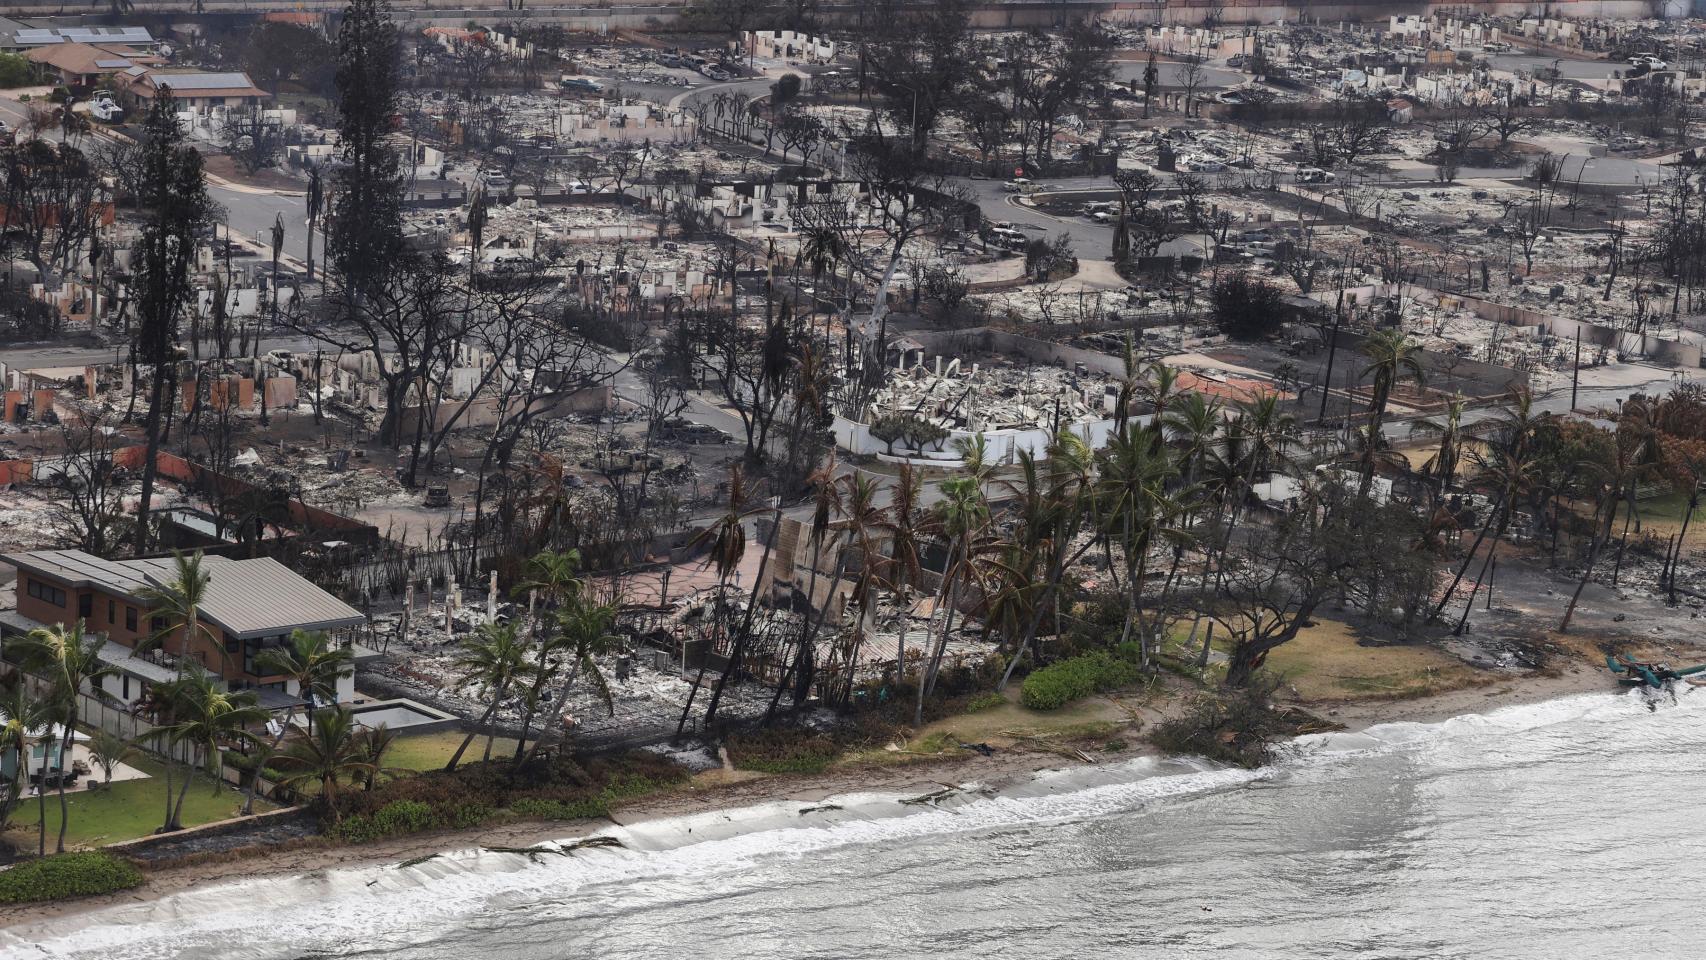 Vistas desde el aire de la comunidad de Lahaina después de los incendios forestales.